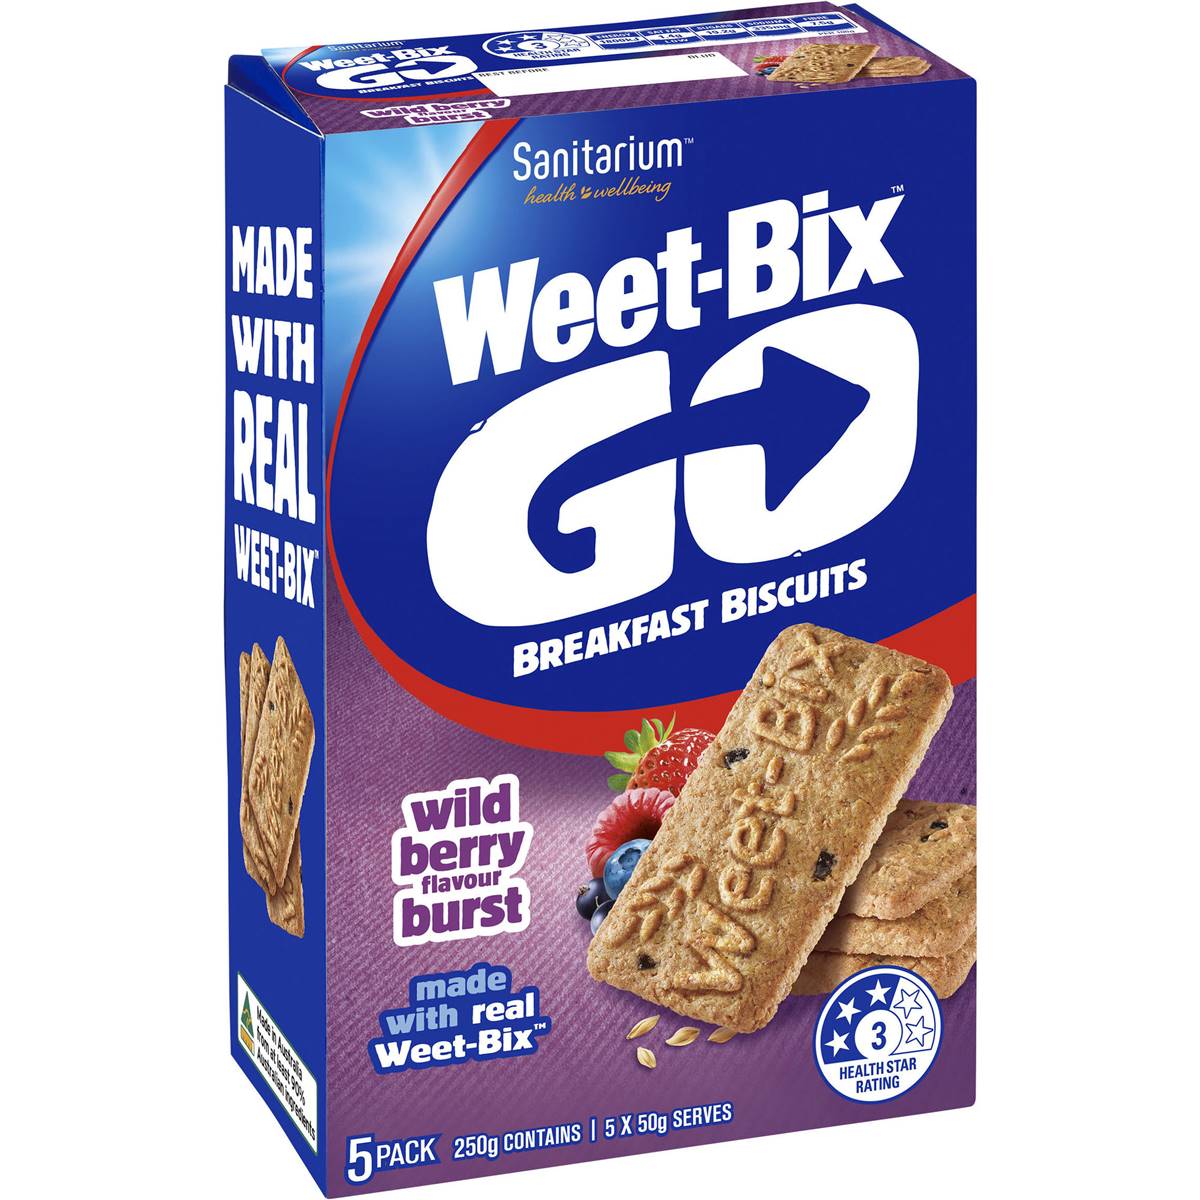 Sanitarium Weet-bix Go Breakfast Biscuits Wild Berry Burst